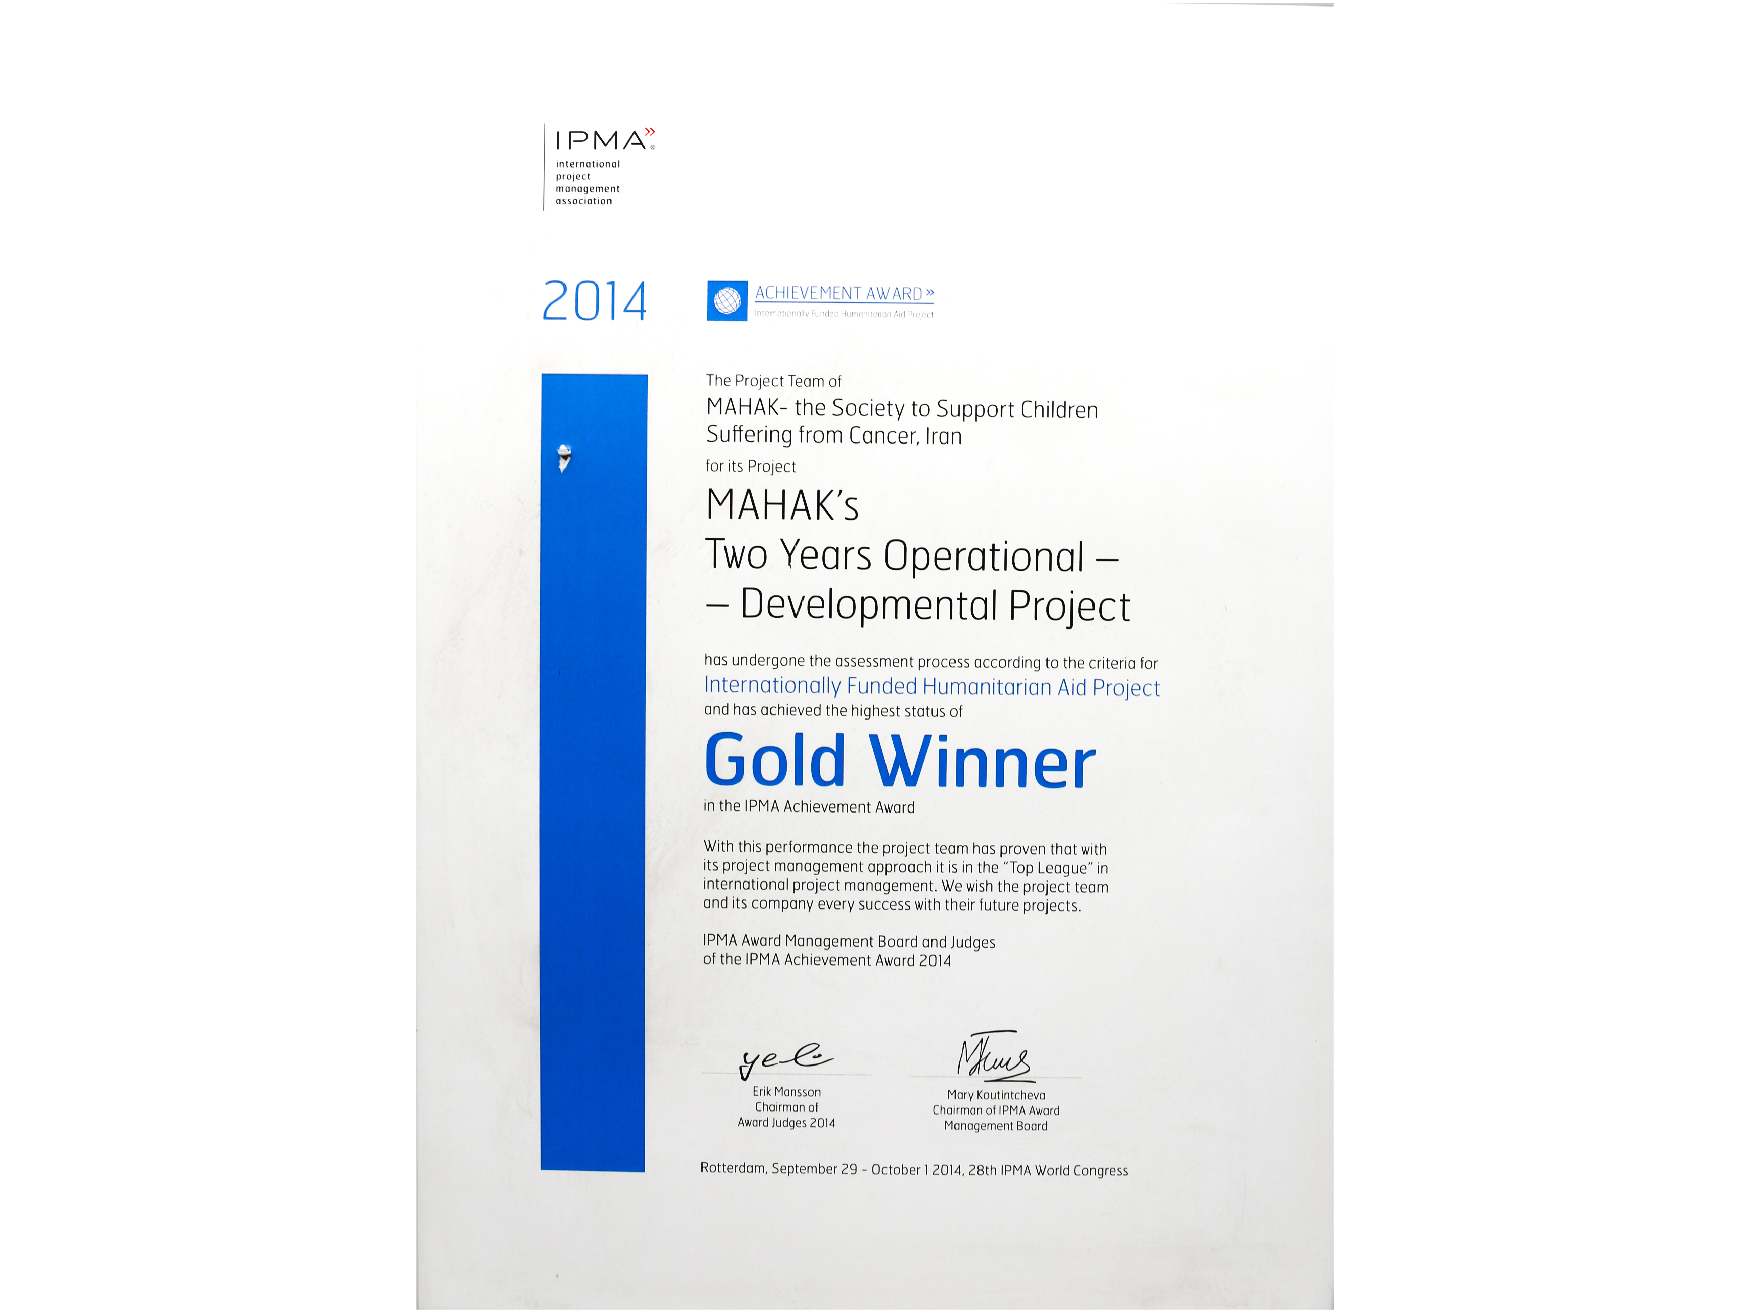 جایزه طلای انجمن بین المللی مدیریت پروژه ۲۰۱۴